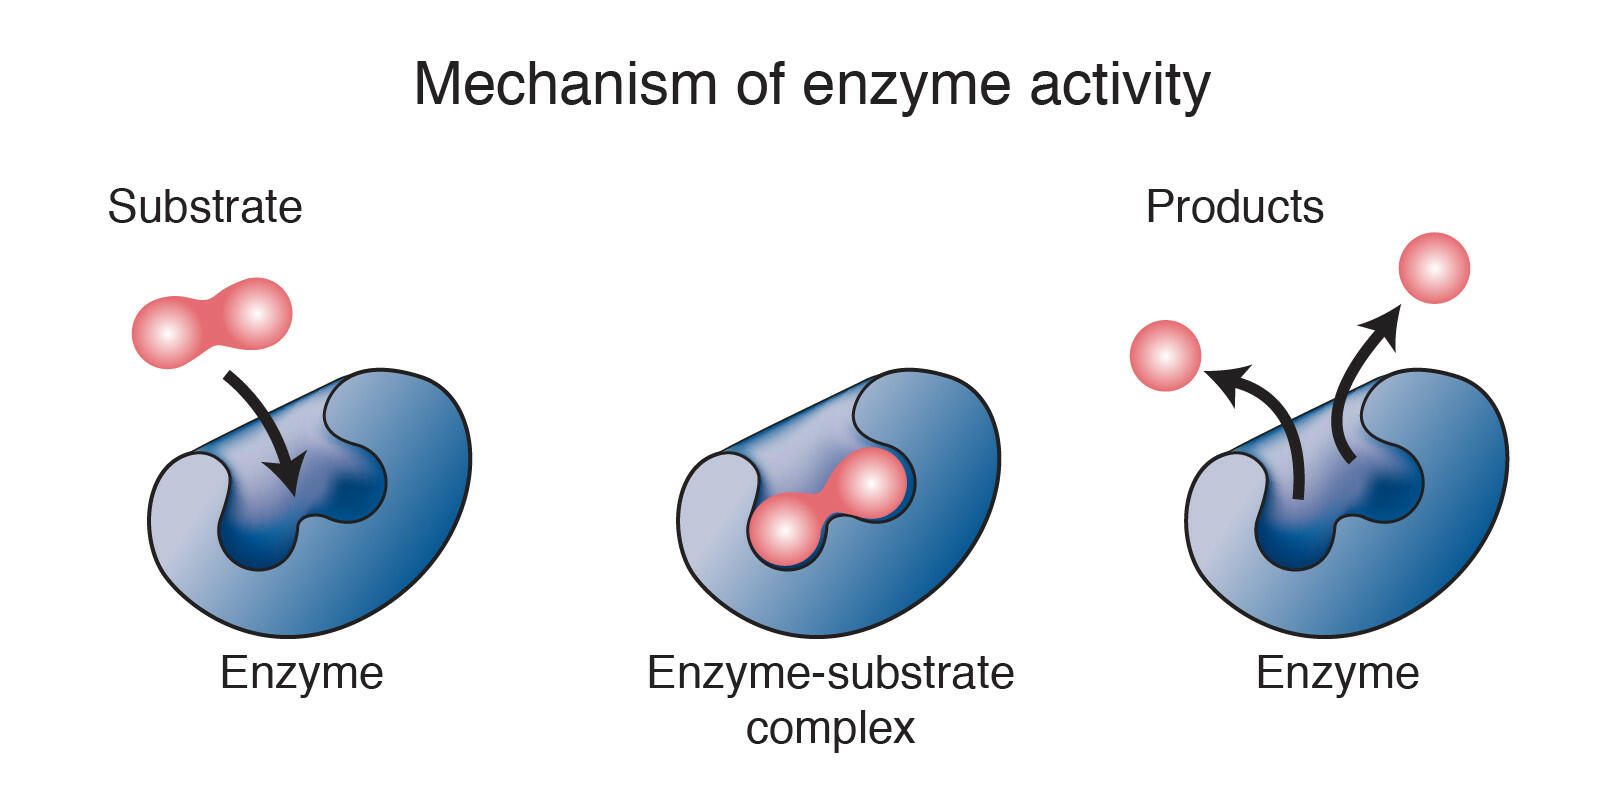 Em có thể rút ra kết luận gì về mối liên kết giữa cơ chất và trung tâm hoạt động của enzyme?